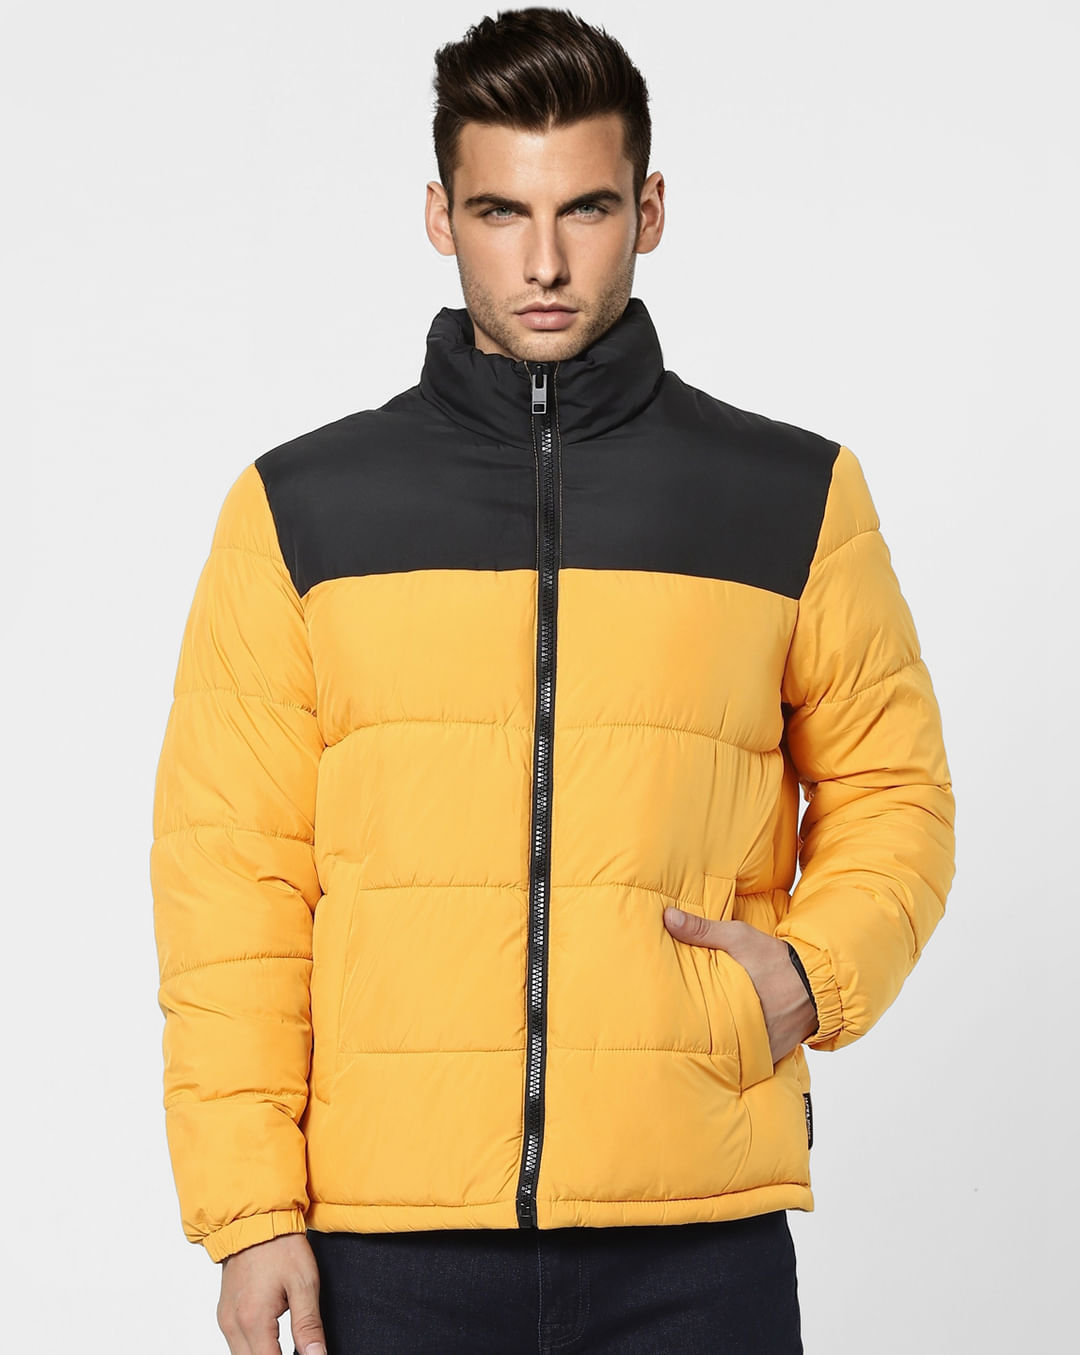 Buy Men Yellow High Neck Puffer Winter Jacket Online